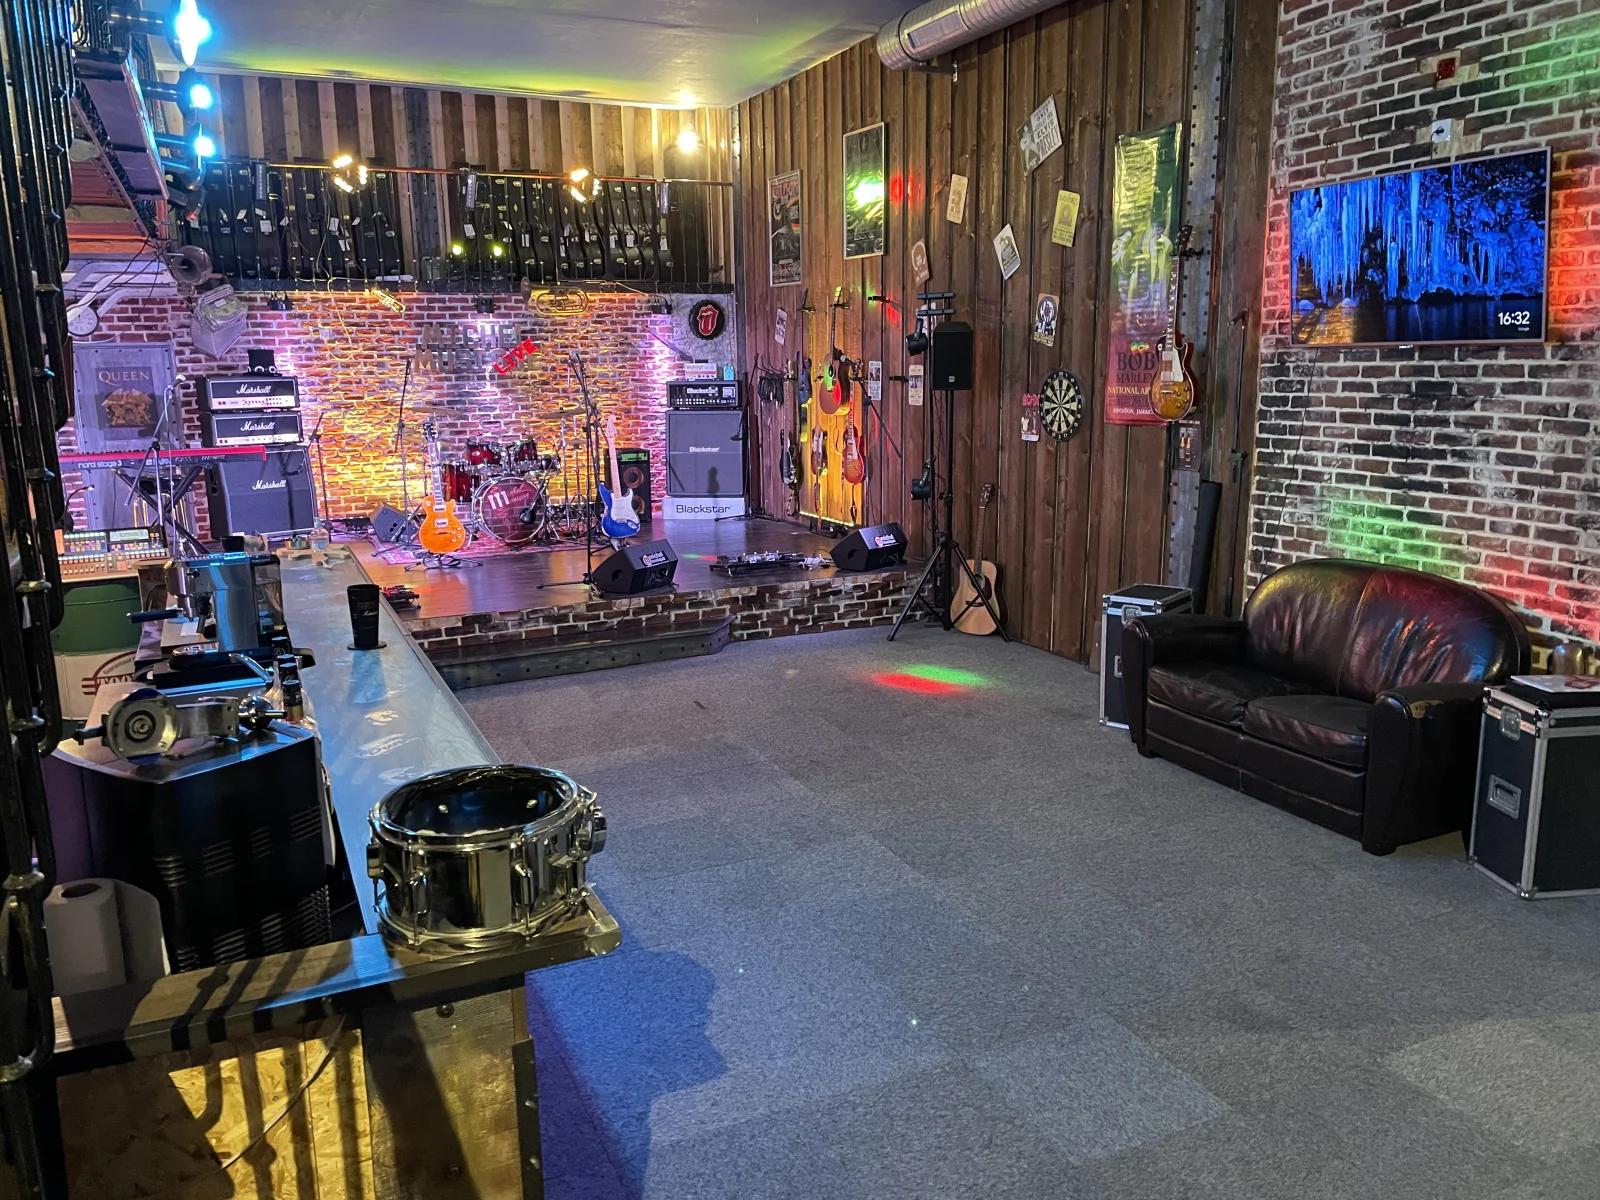 Living room in New York club atmosphere - 1